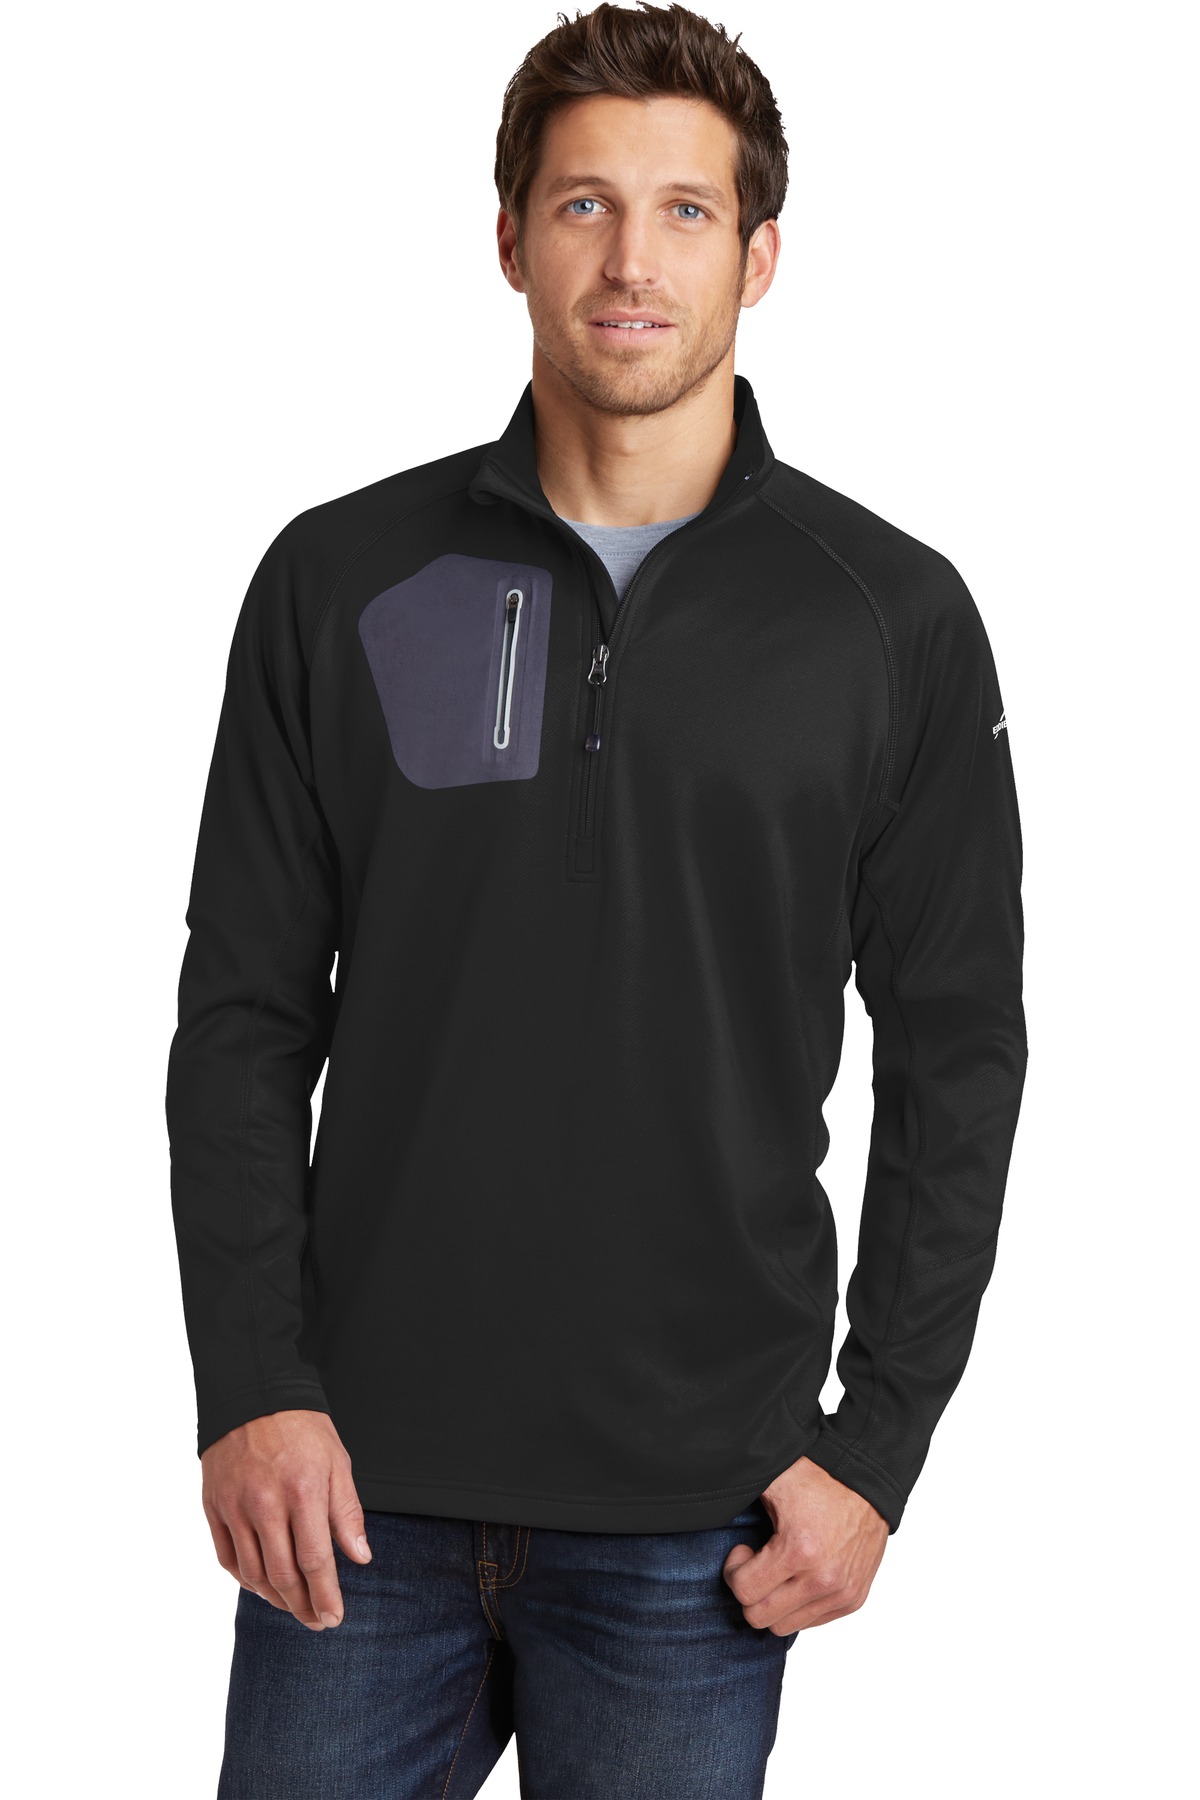 Eddie Bauer Outerwear, Sweat shirts & Fleece for Hospitality ® 1/2-Zip Performance Fleece.-Eddie Bauer